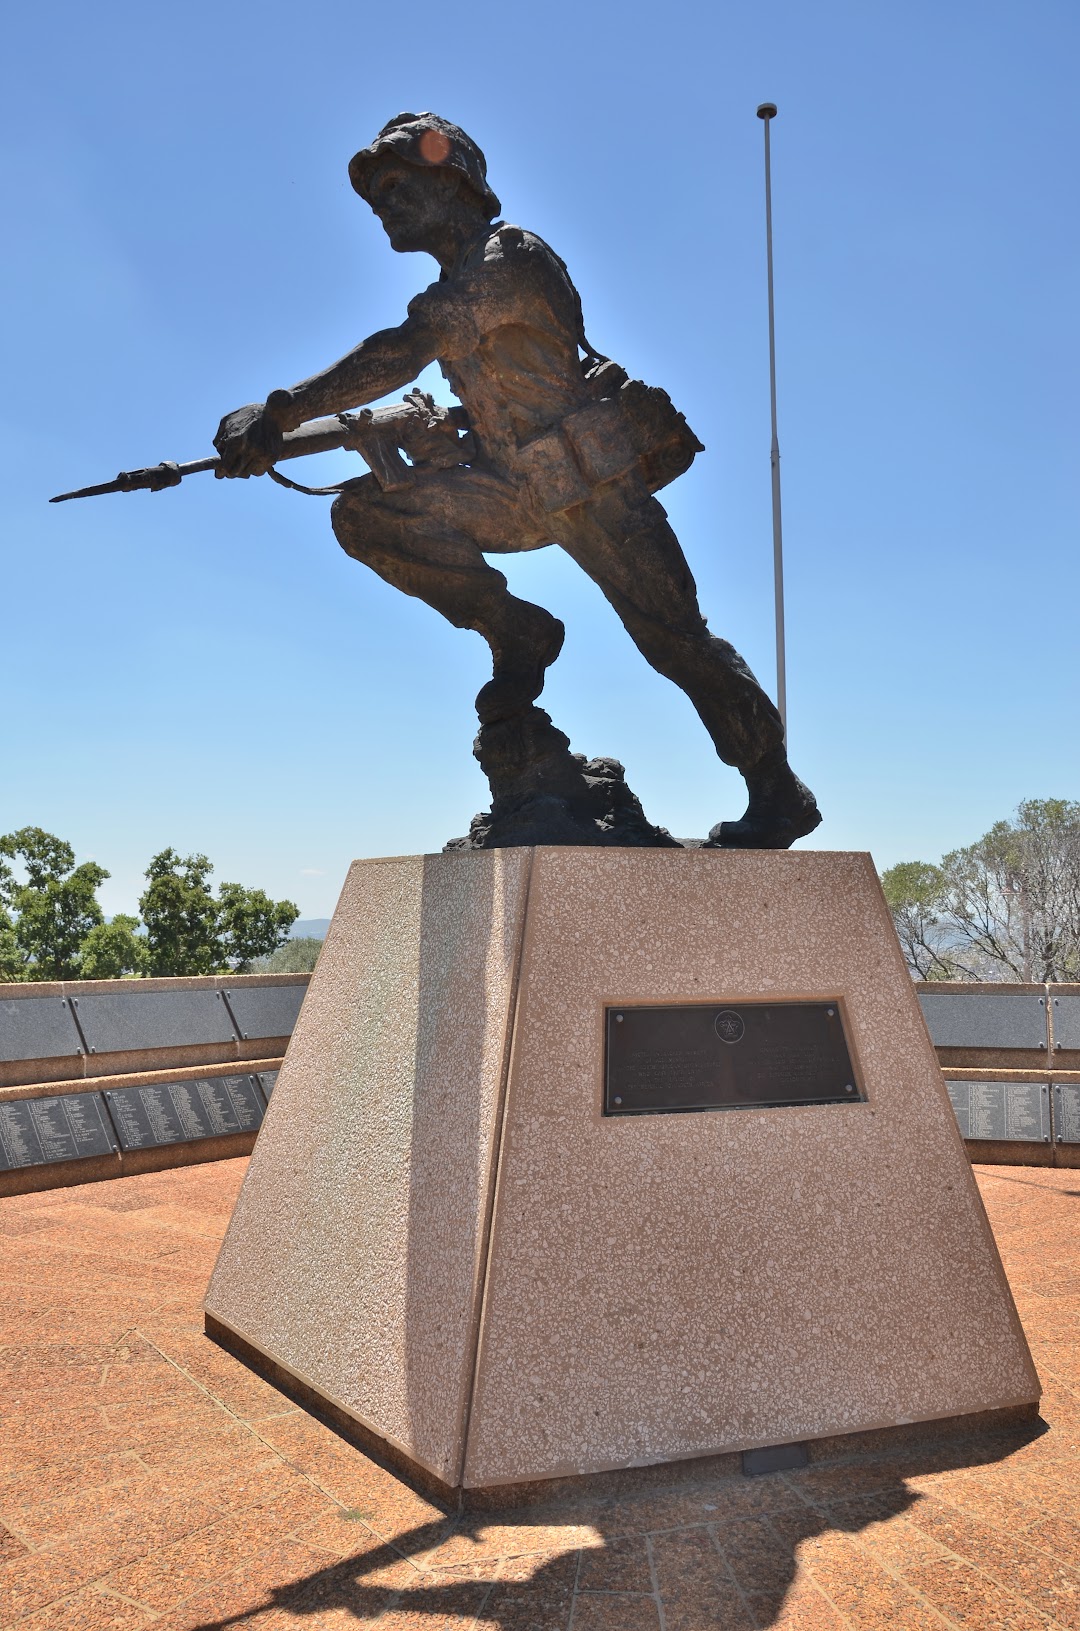 Fallen Soldiers Memorial